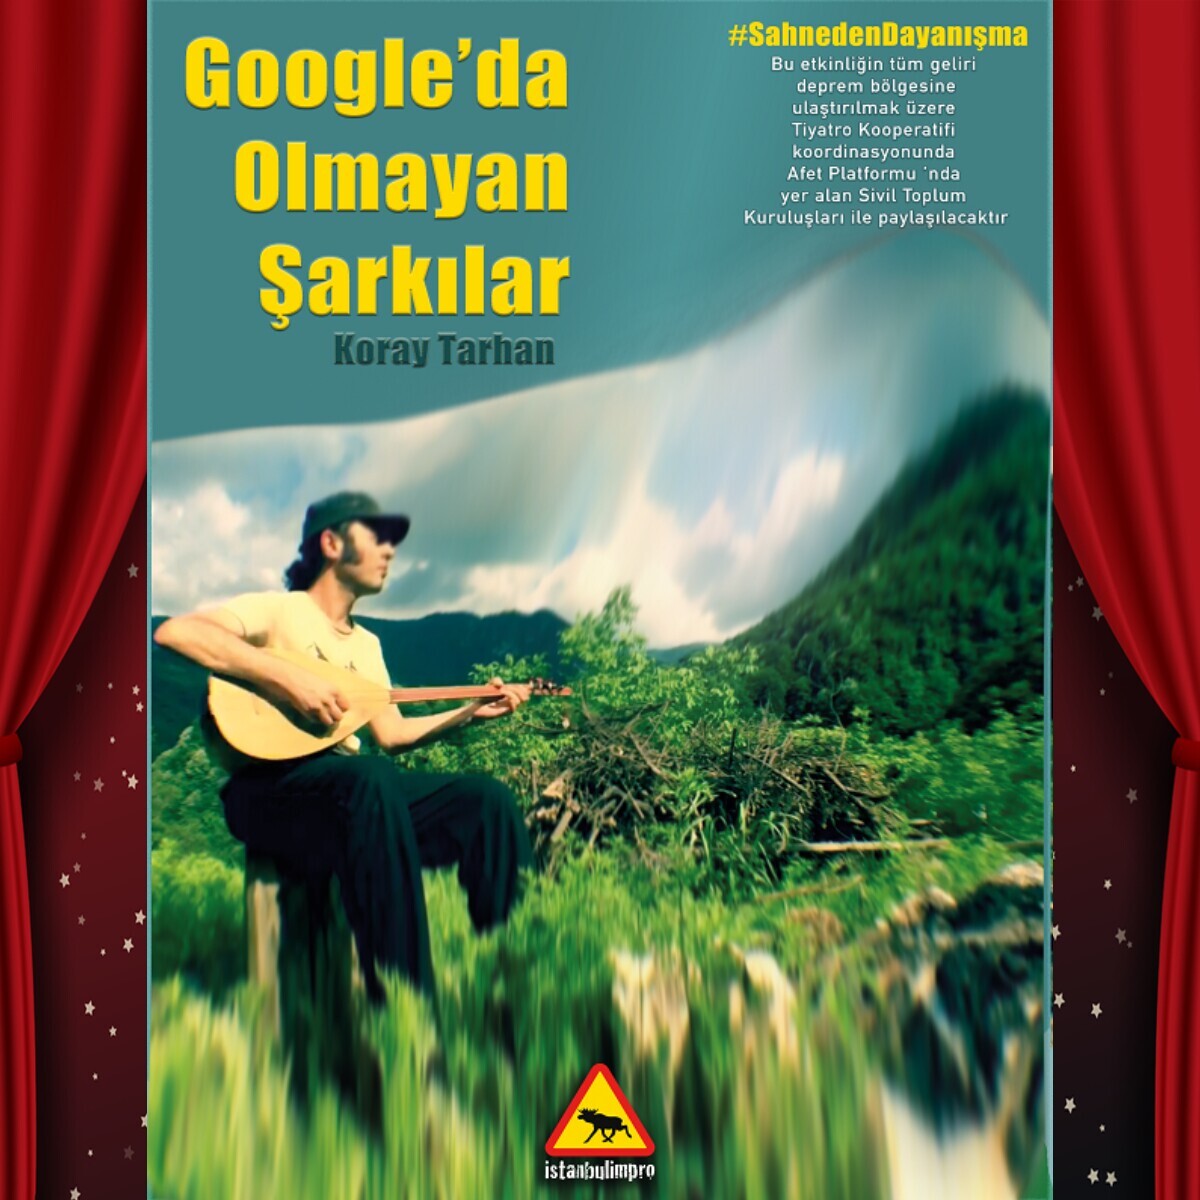 'Google'da Olmayan Şarkılar' Tiyatro Oyunu Bileti